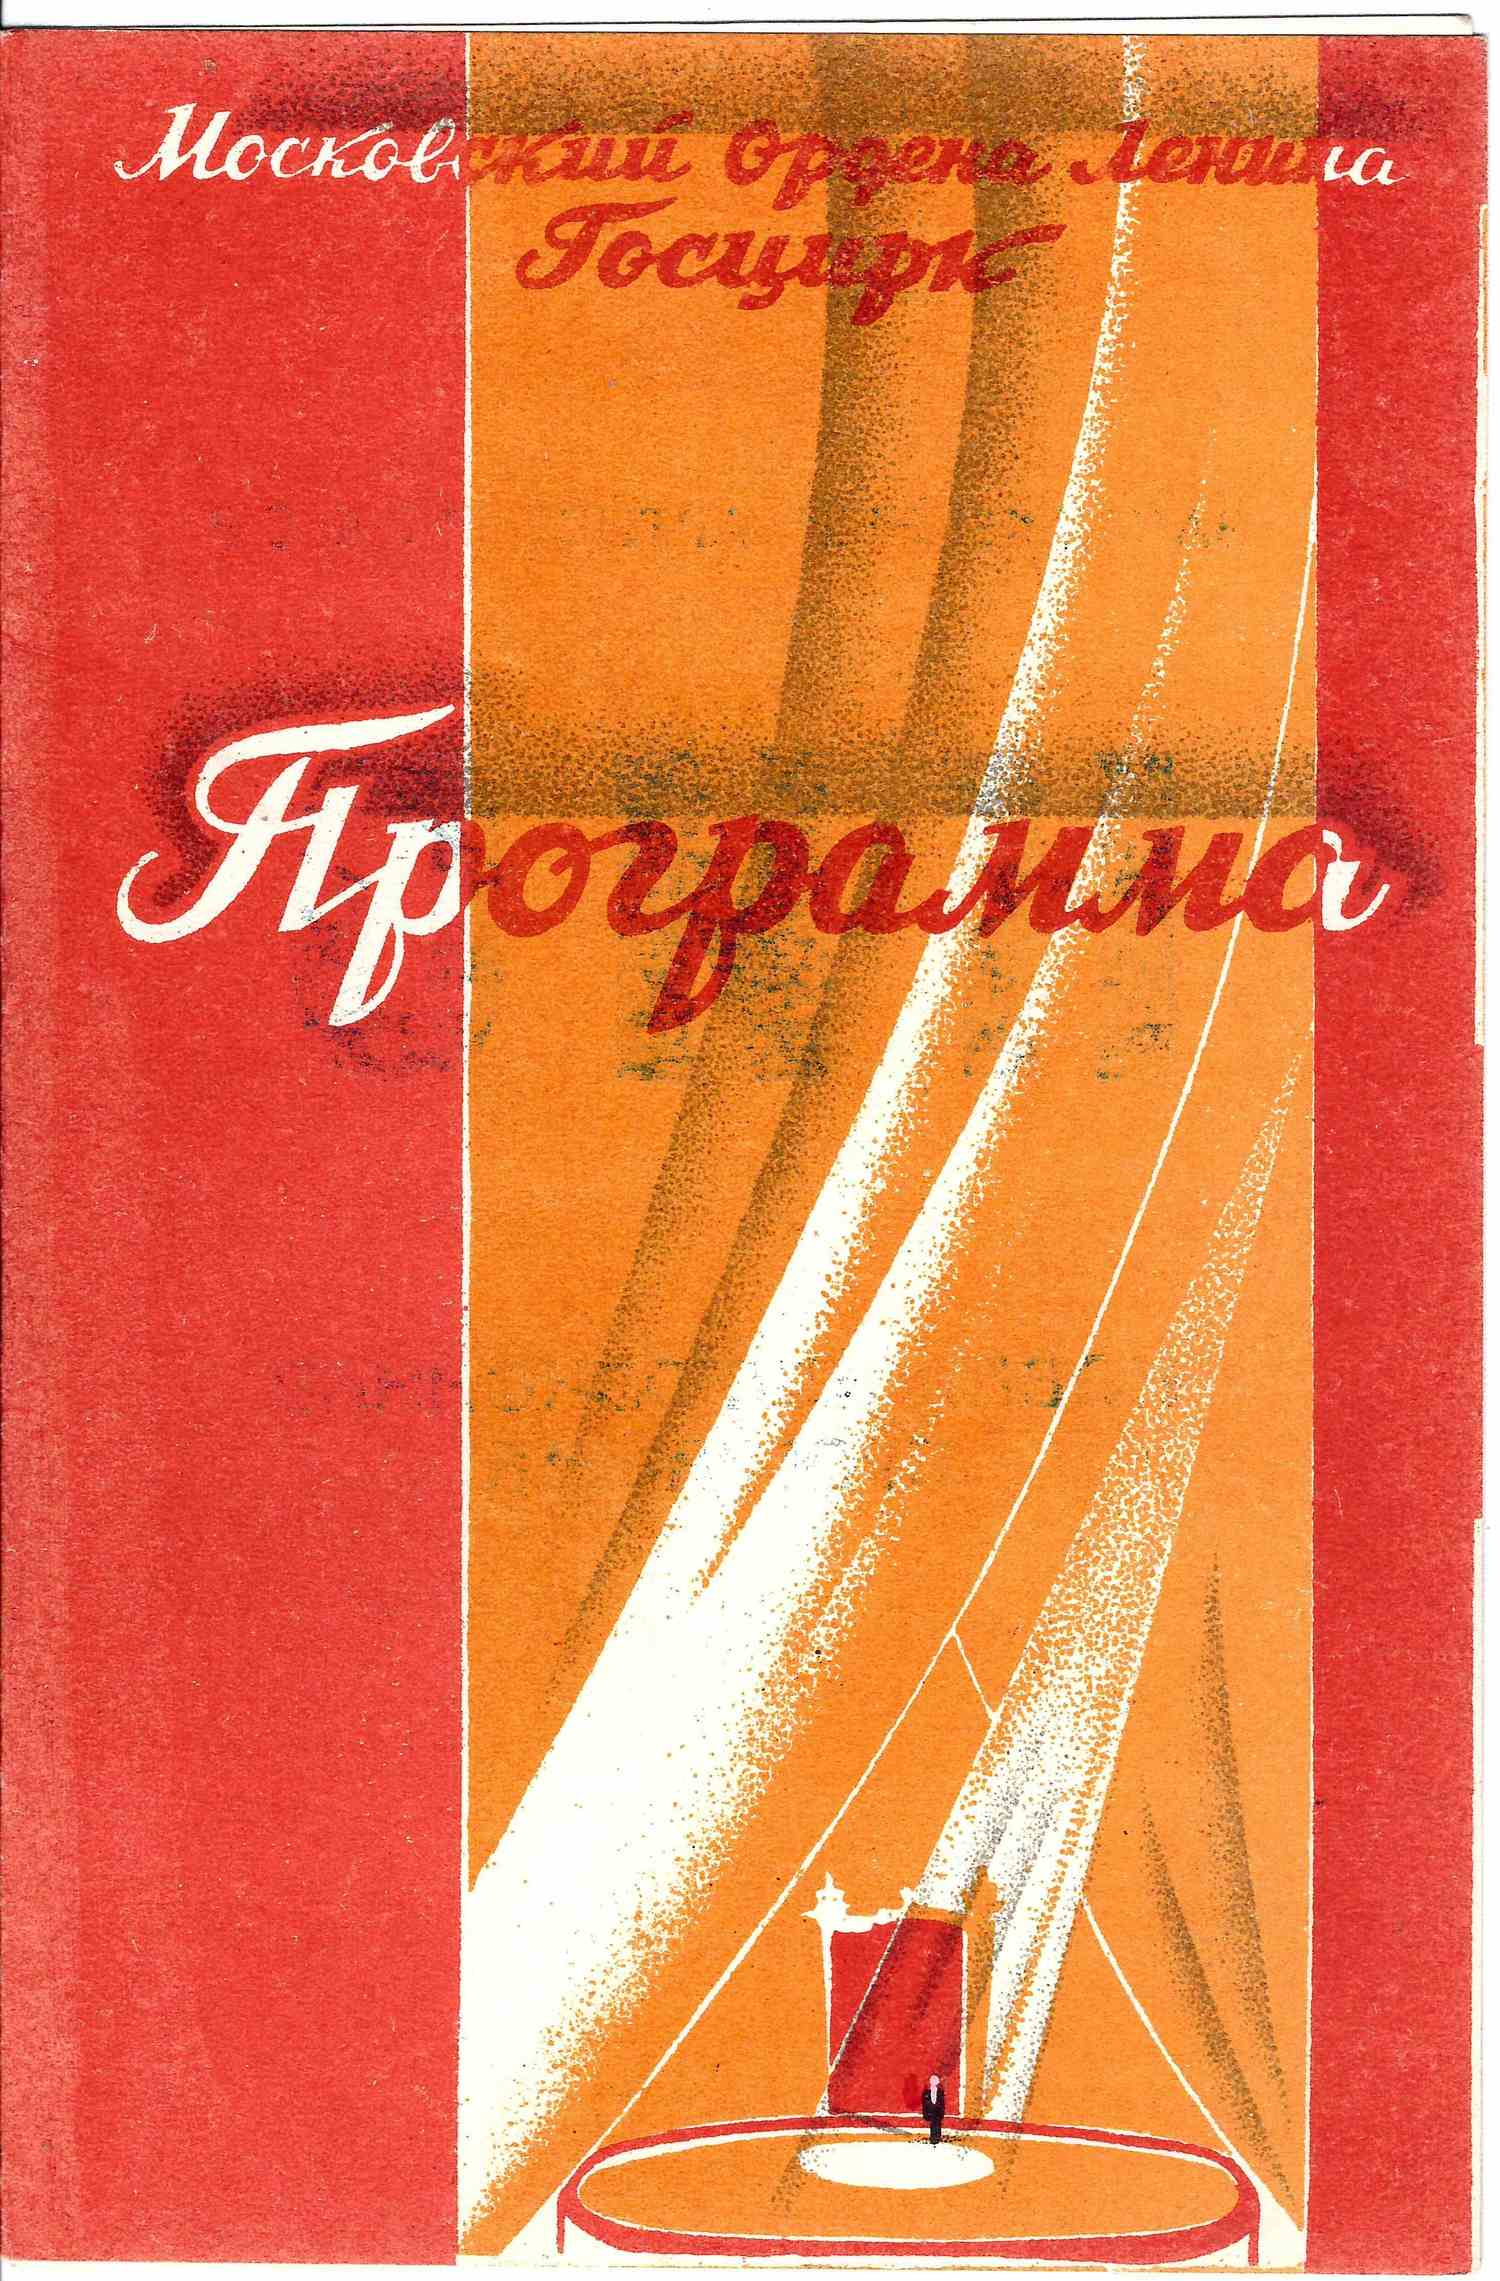 Программа выступления Эмиля Теодоровича Кио в Московском Госцирке. 1945.